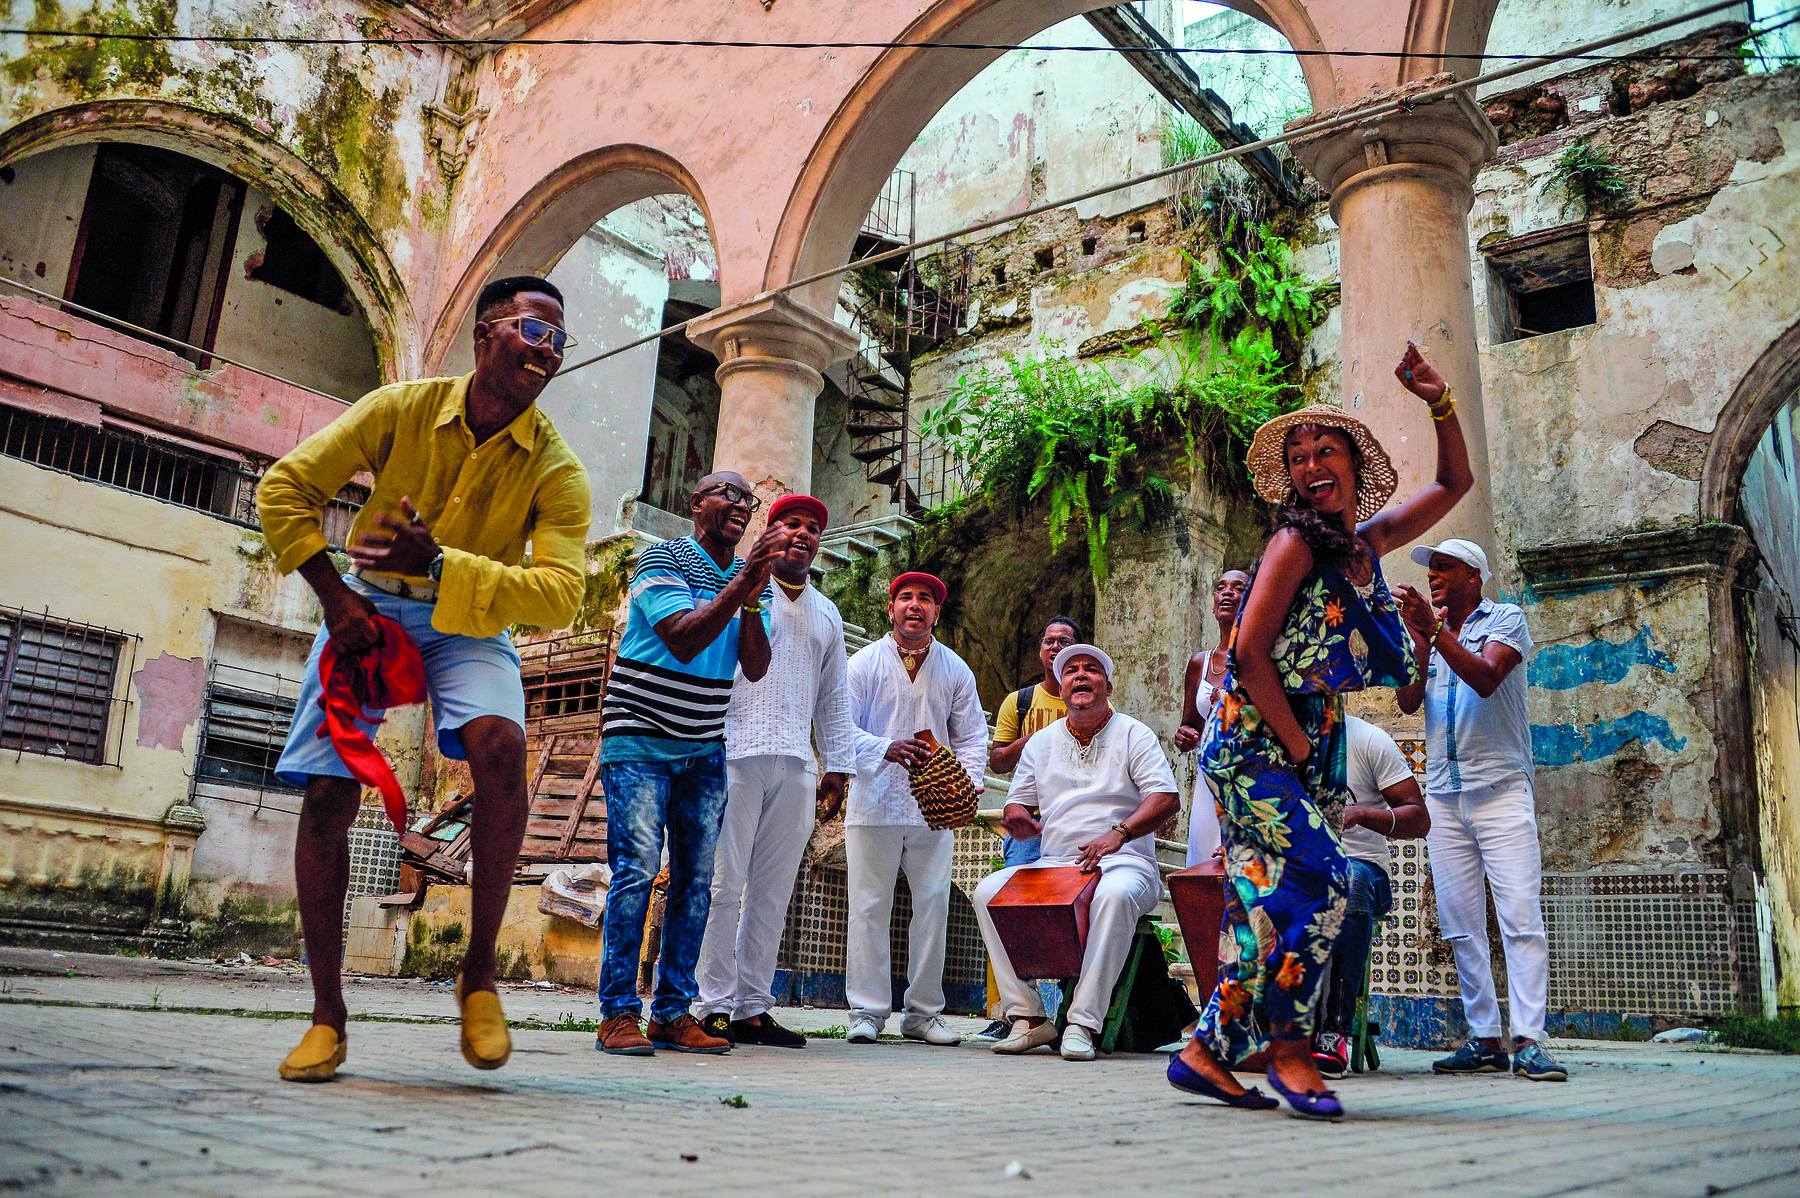 Fotografia. Grupo de pessoas tocando e dançando. Um homem de camisa amarela e bermuda jeans e uma mulher de vestido floral estão dançando. Atrás deles, homens cantando, alguns deles estão sentados tocando instrumentos.